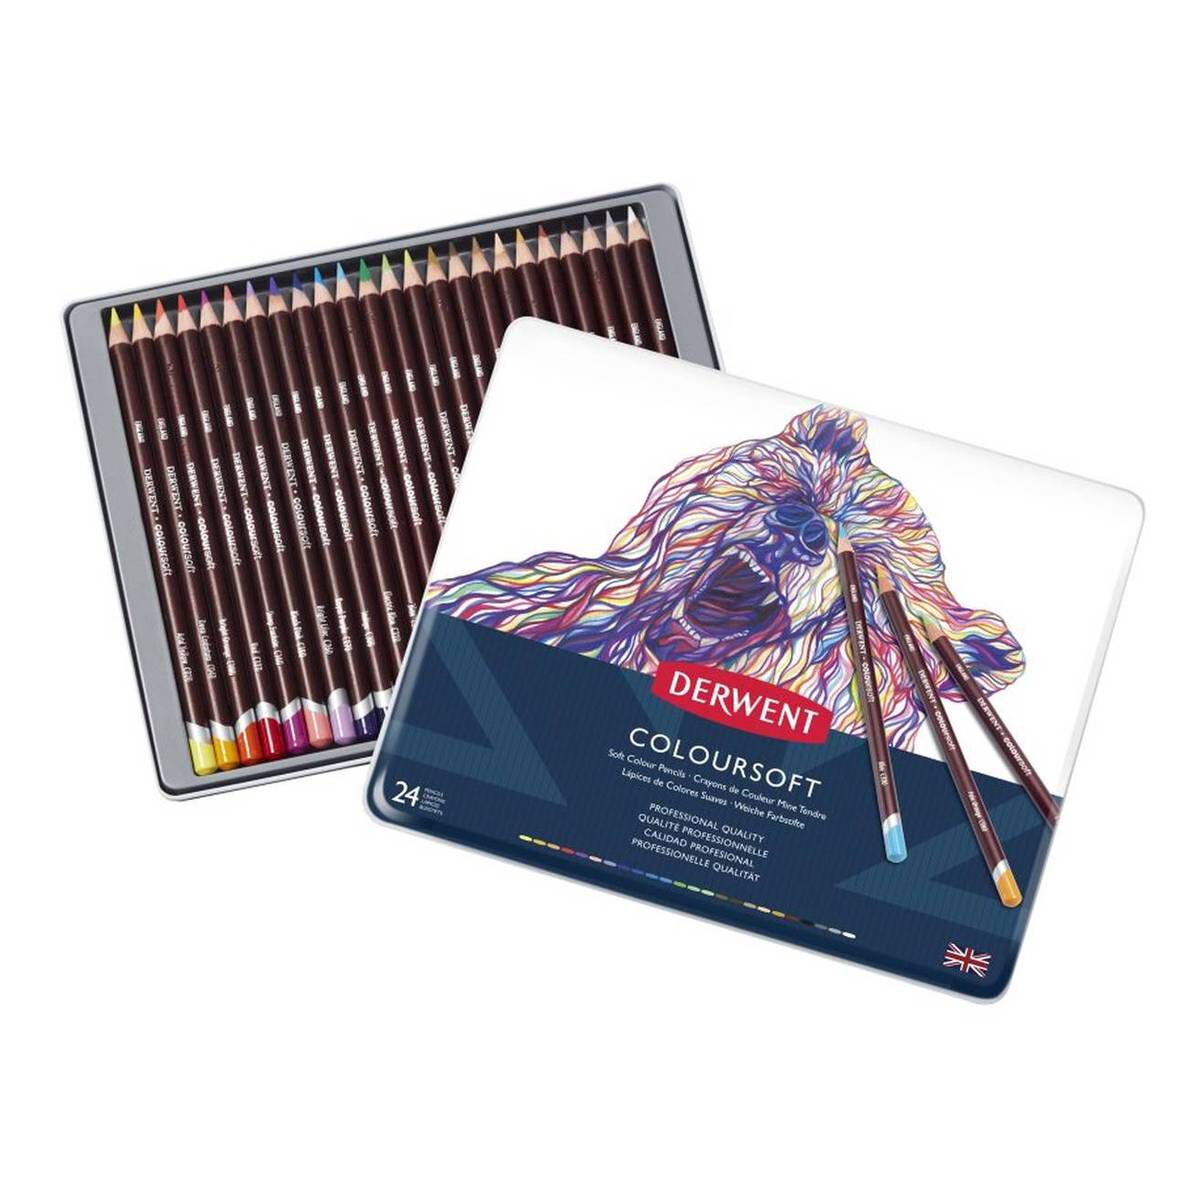 Derwent Coloursoft Pencils 24 Pack Hobbycraft